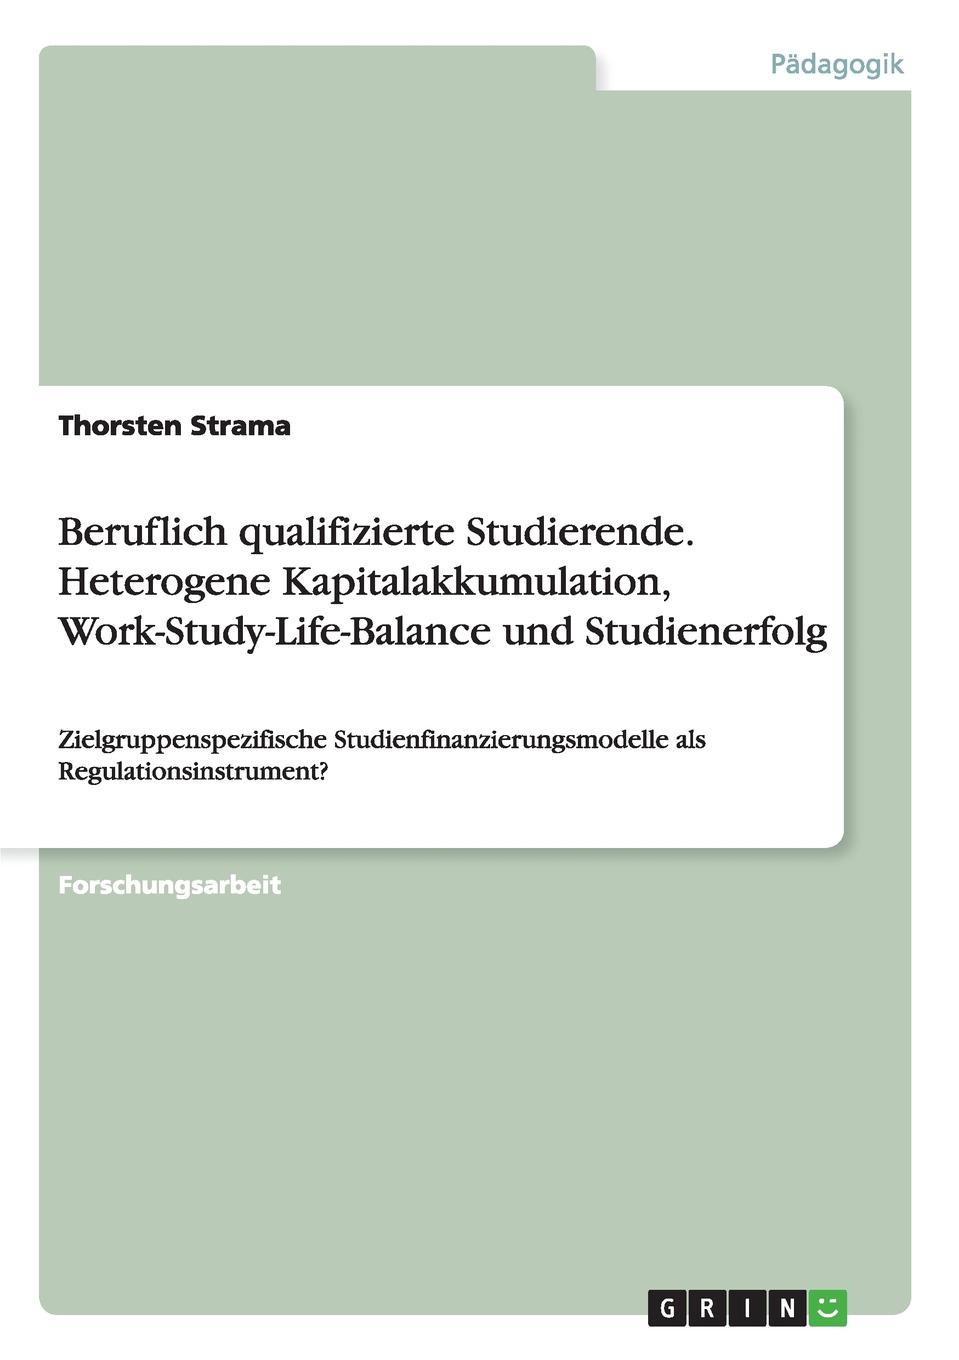 Beruflich qualifizierte Studierende.Heterogene Kapitalakkumulation, Work-Study-Life-Balance und Studienerfolg